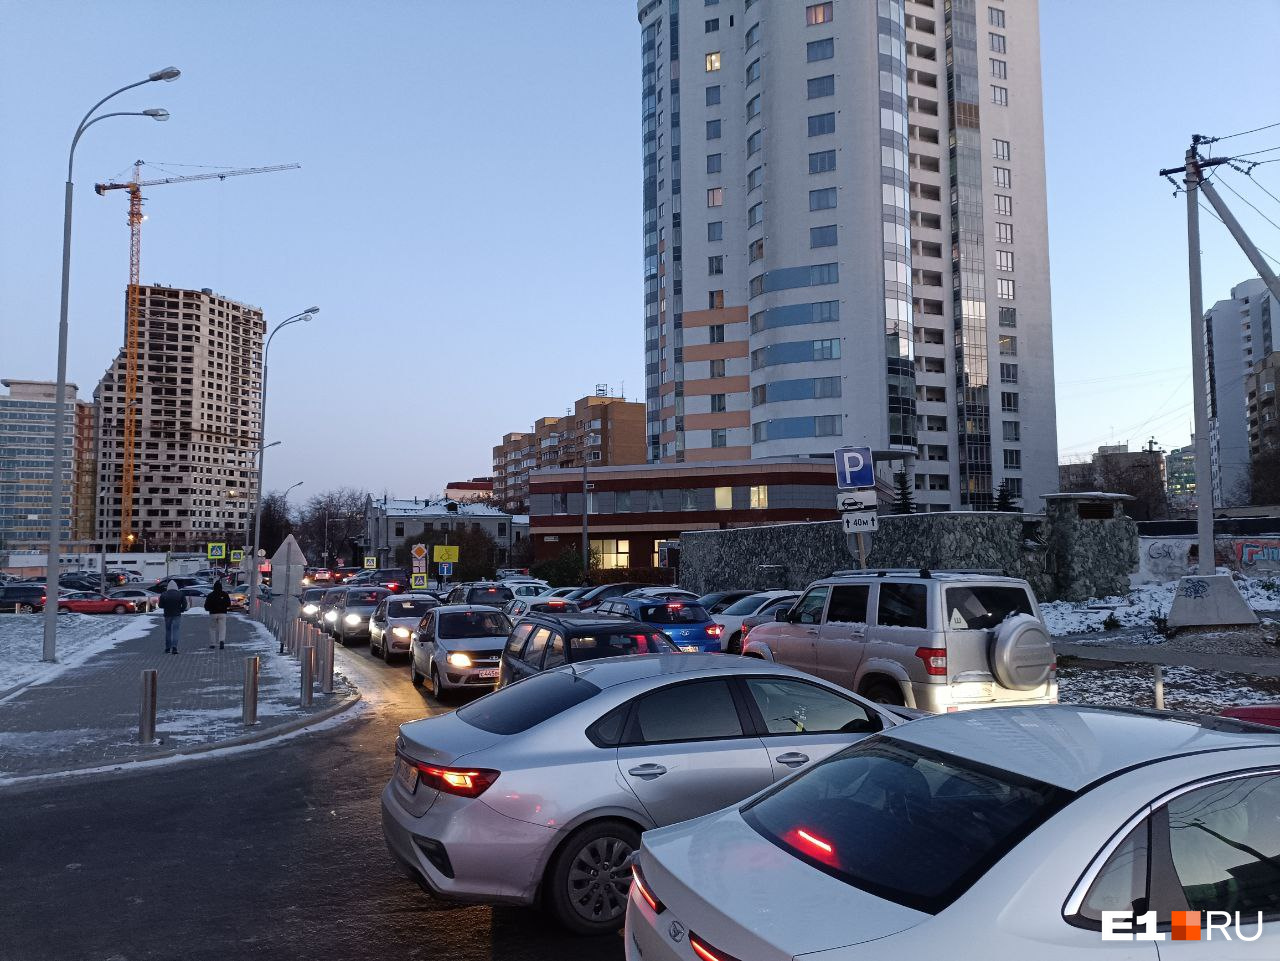 В центре Екатеринбурга внезапно перекрыли маленькую, но важную улицу. Водители встали в пробку